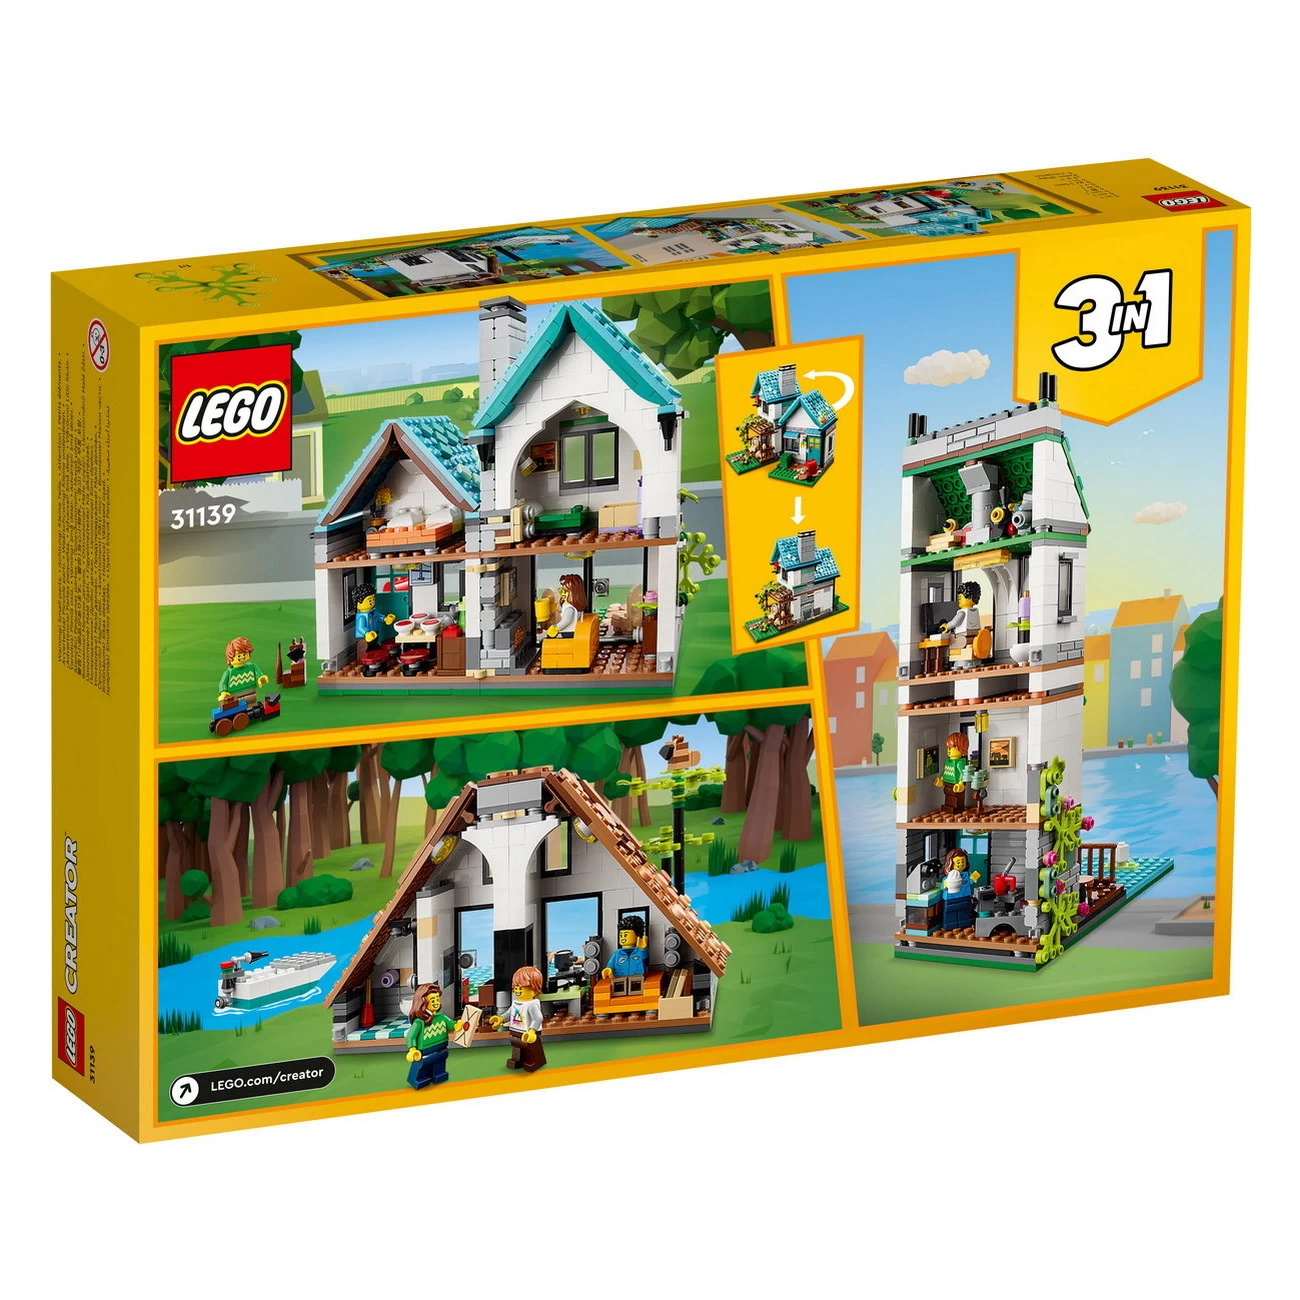 LEGO Creator 31139 - Gemütliches Haus